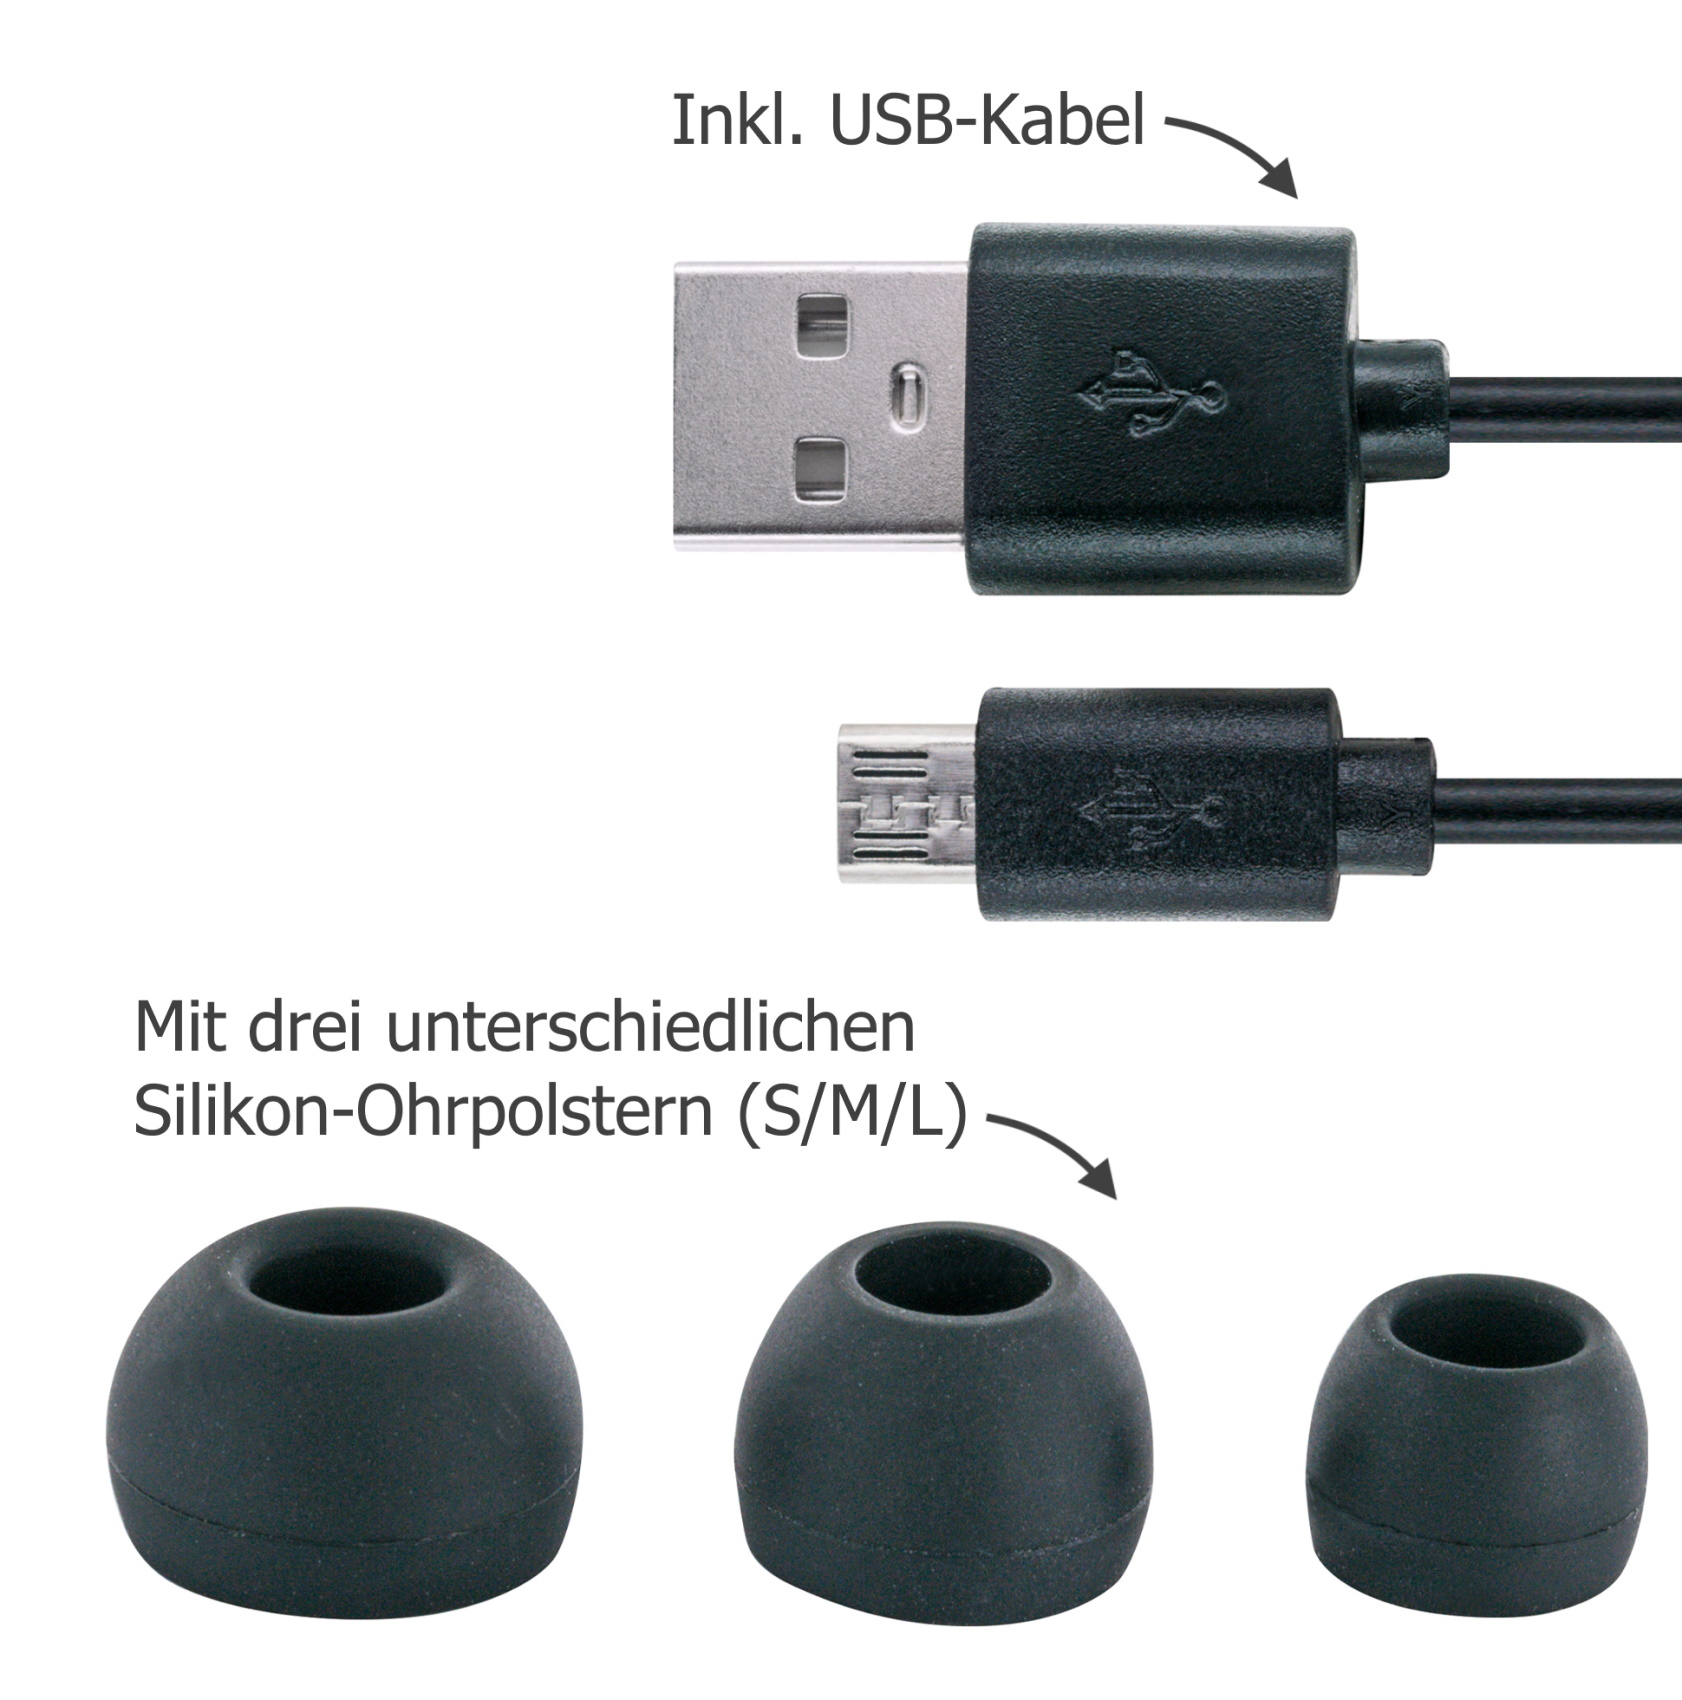 In-ear Bluetooth -KH710BTW 512-, Bluetooth Weiß Kopfhörer SCHWAIGER